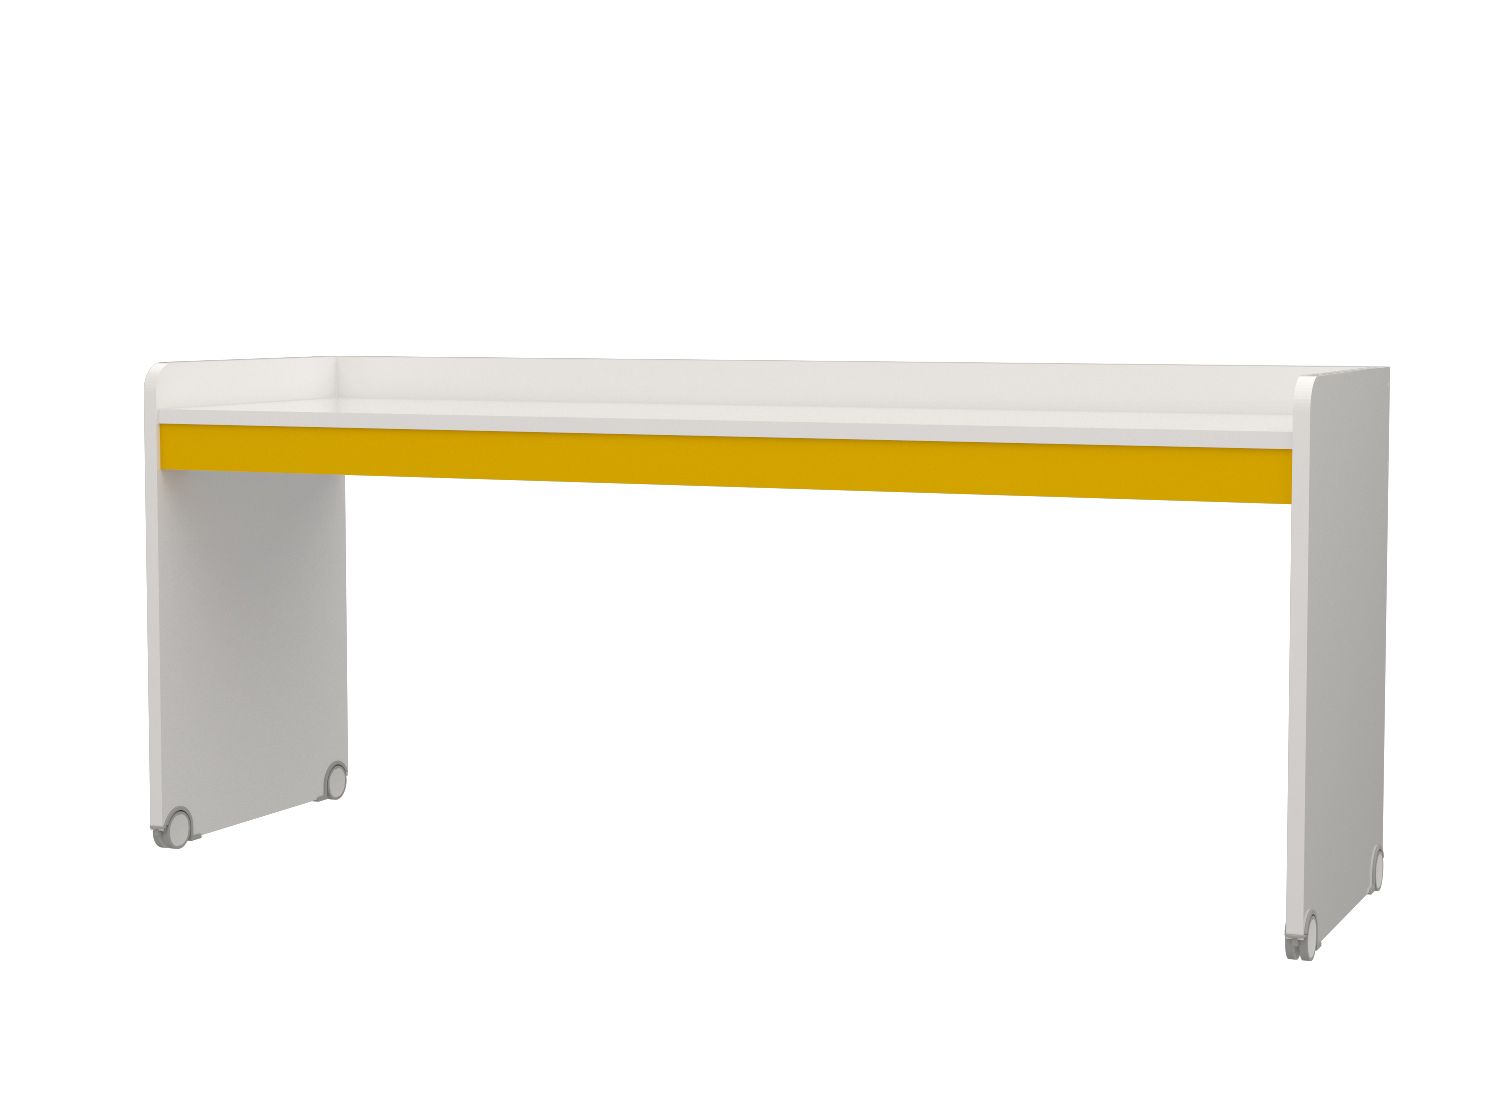 Hochbett Set Neo 4-Teilig inkl. großer Schreibtisch in verschiedenen Farben